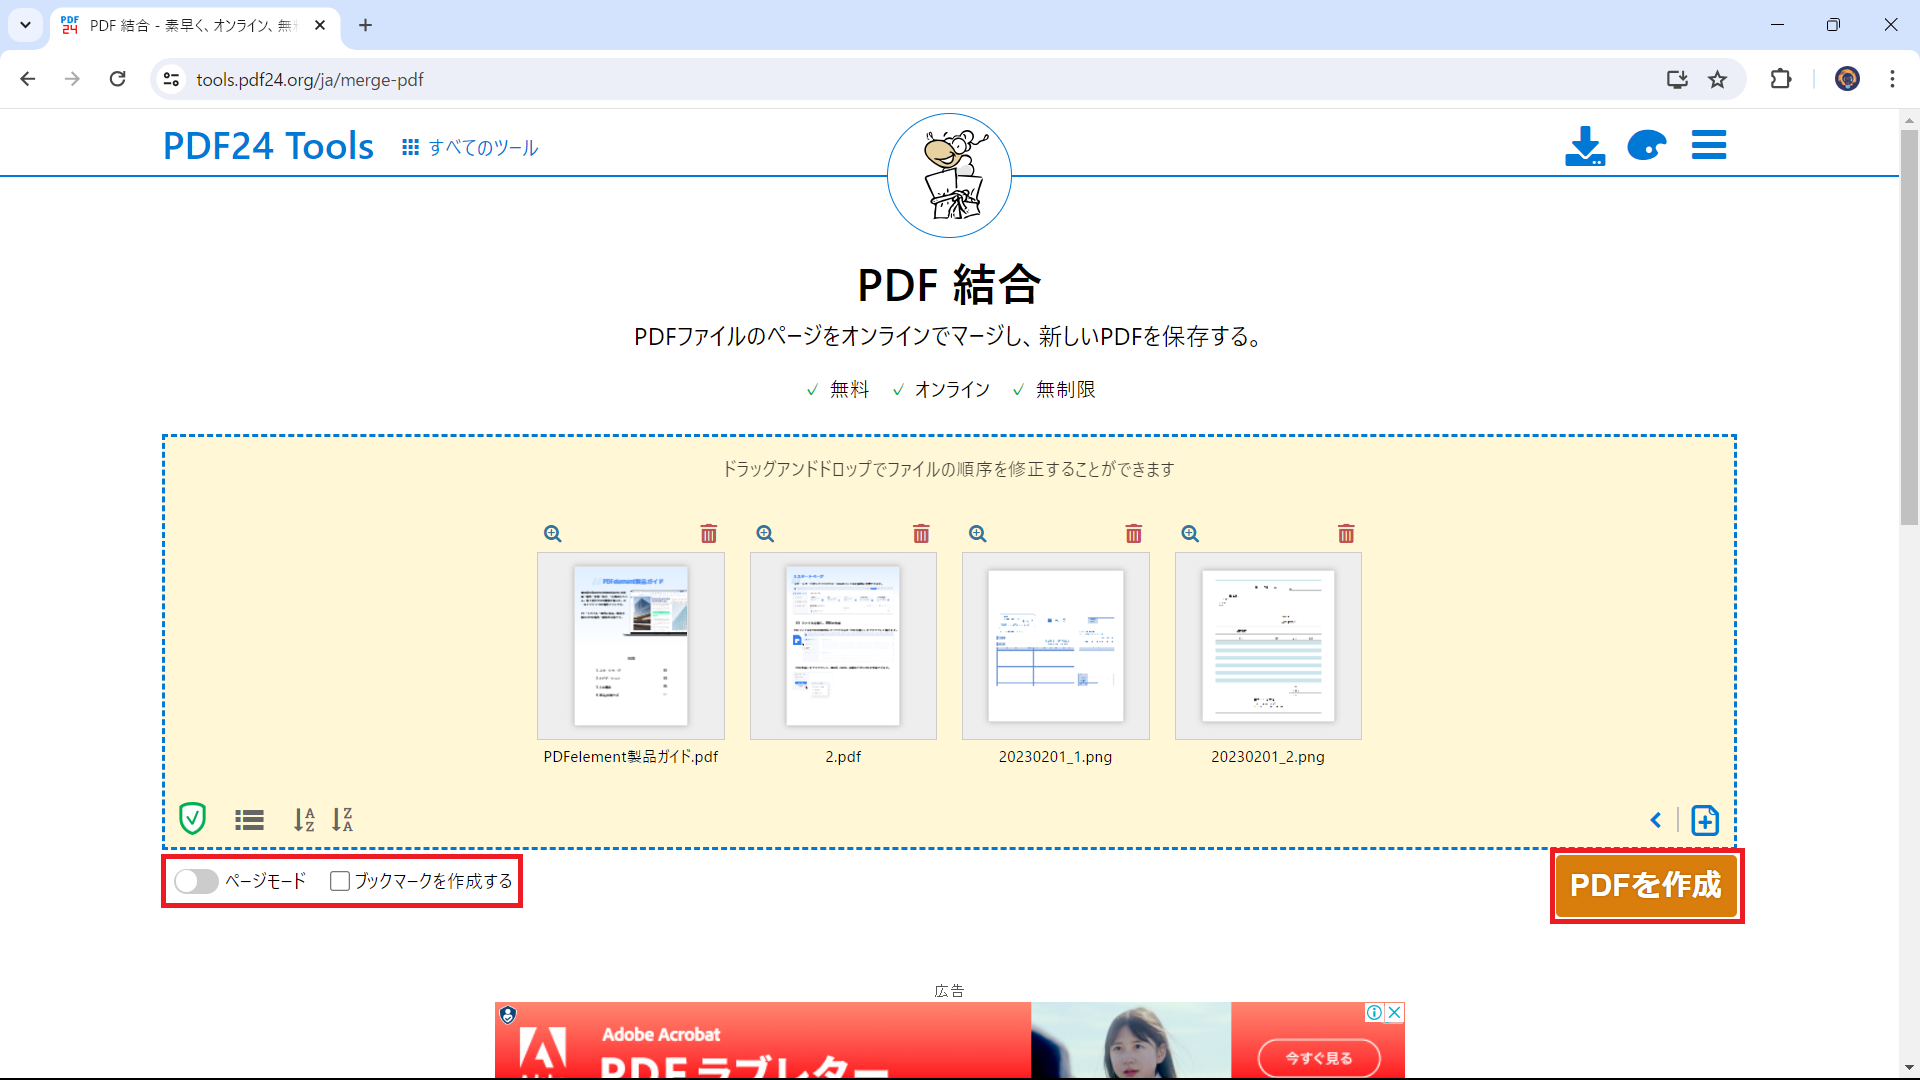 PDF24 ToolsでPDF結合